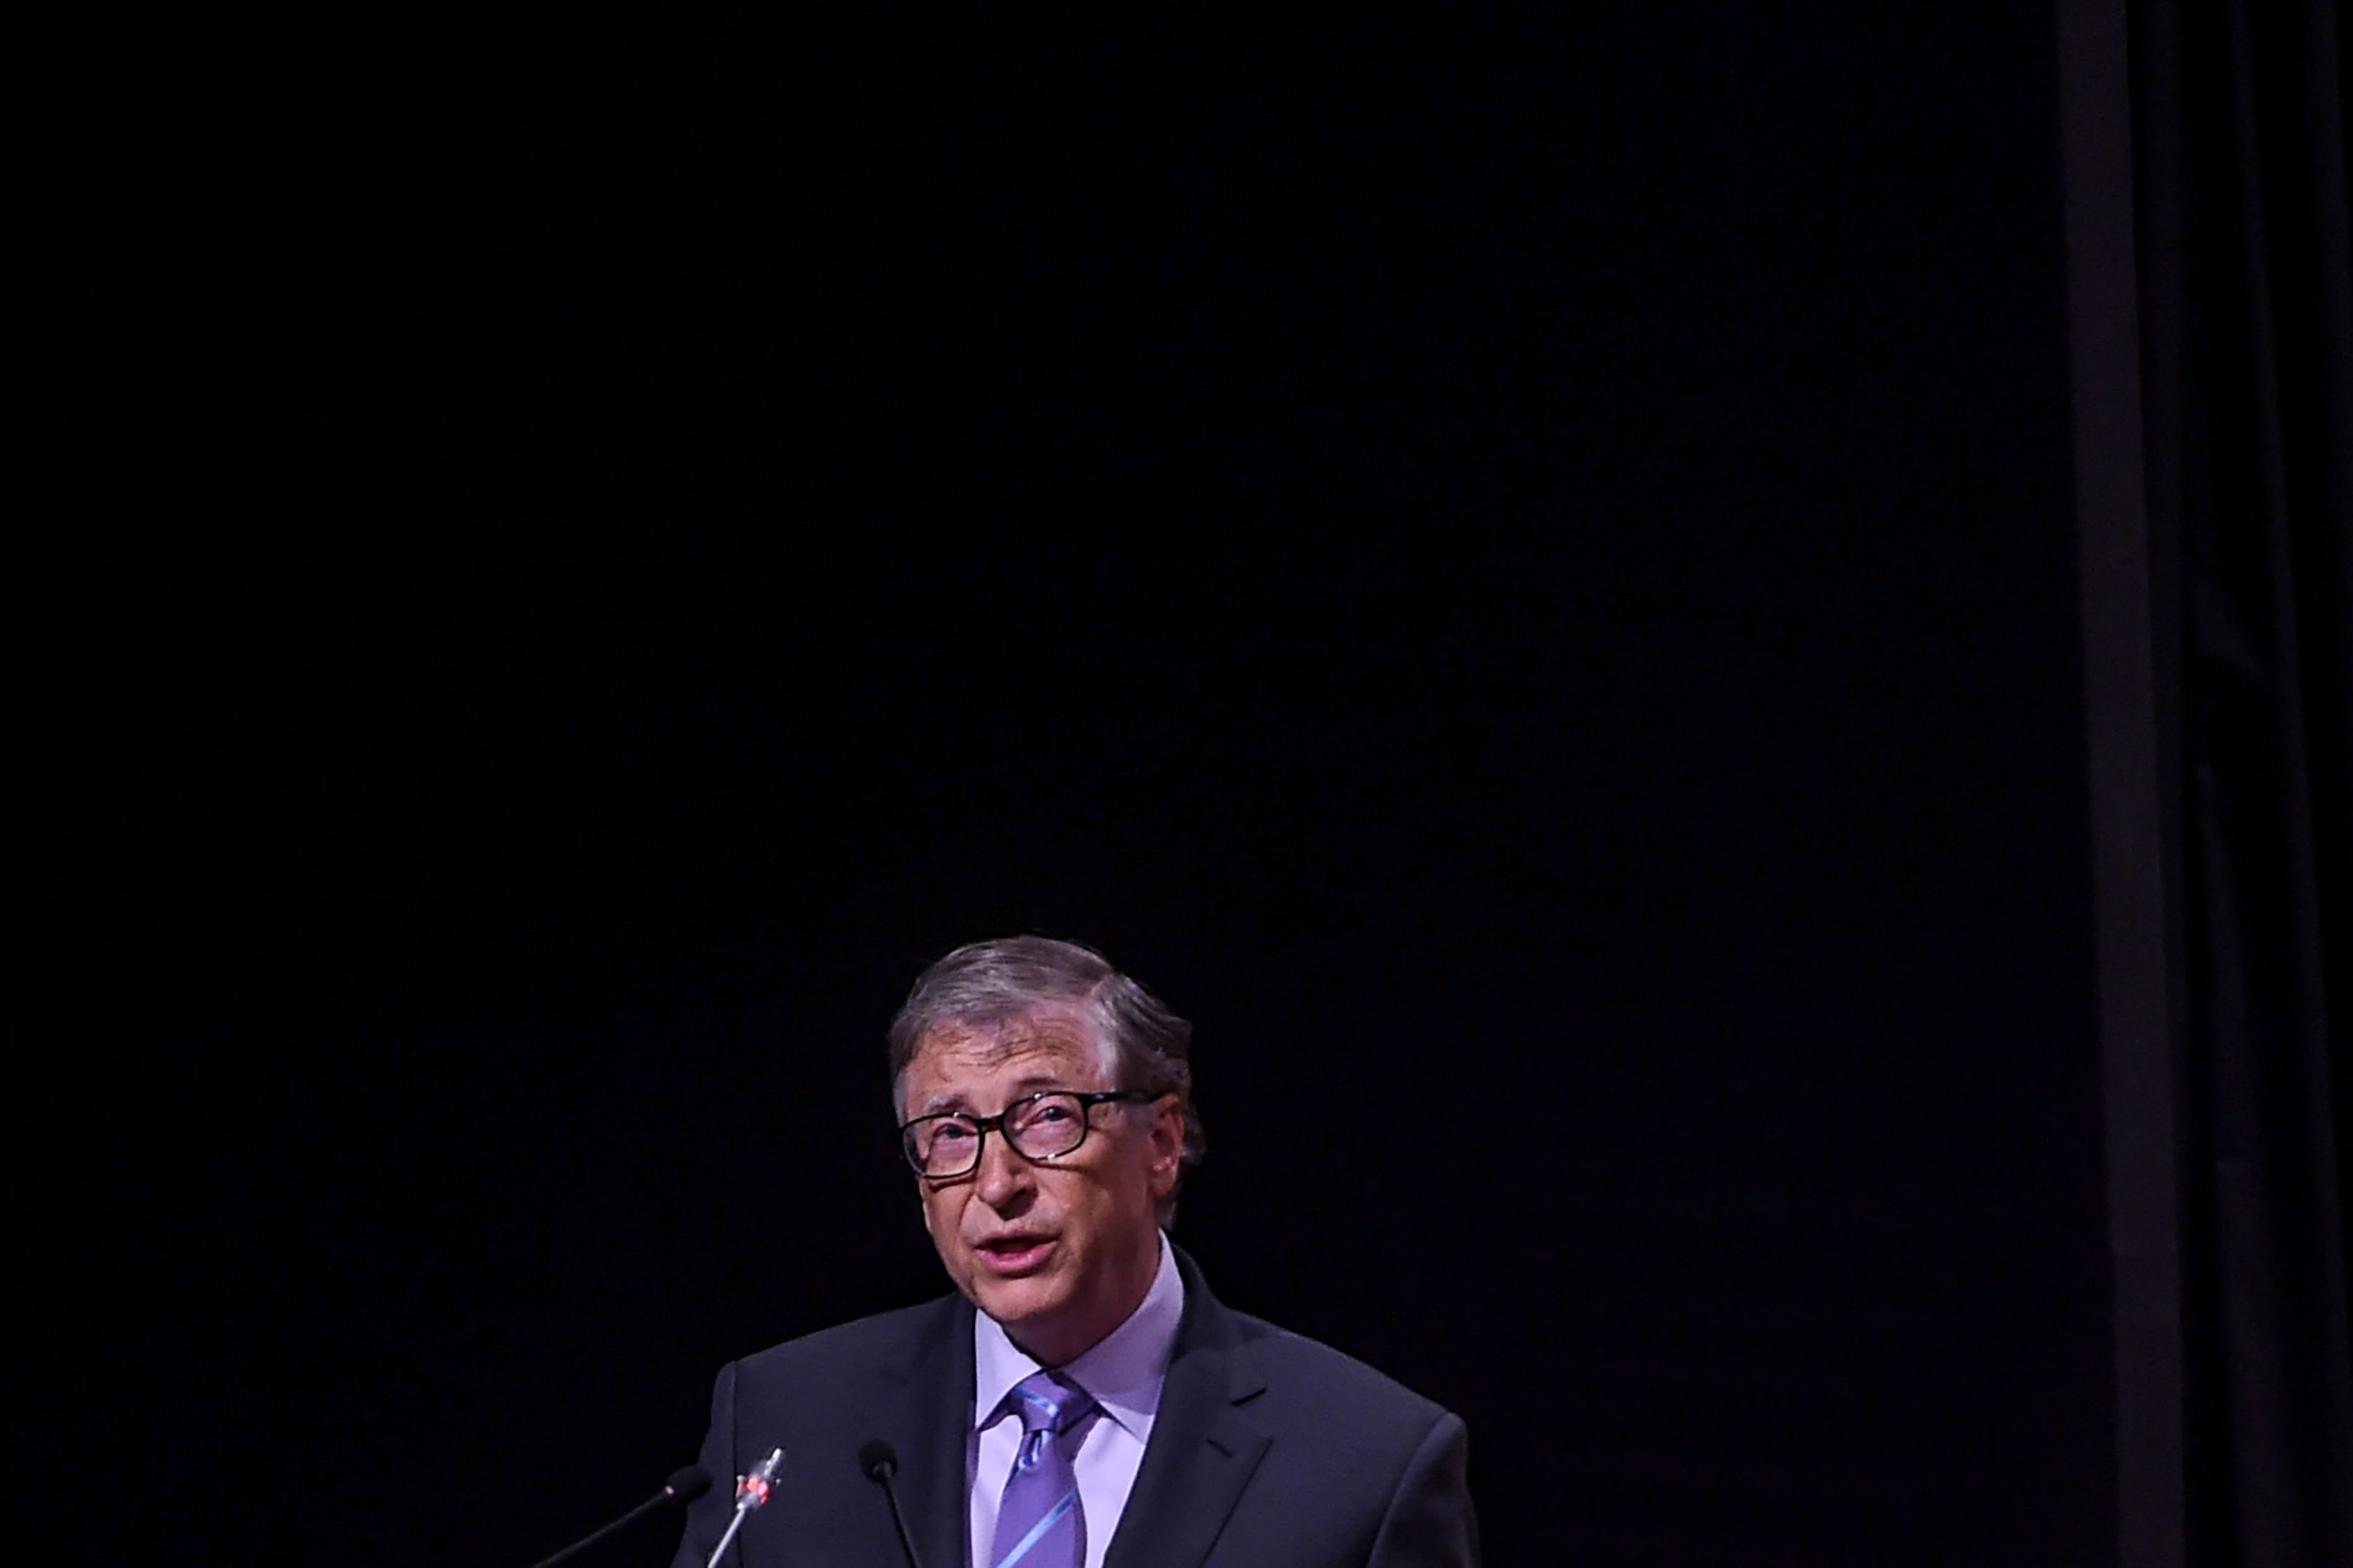 Bill Gates, empresario muy vinculado a la investigación científica gracias a su fundación. (Foto Prensa Libre: AFP)